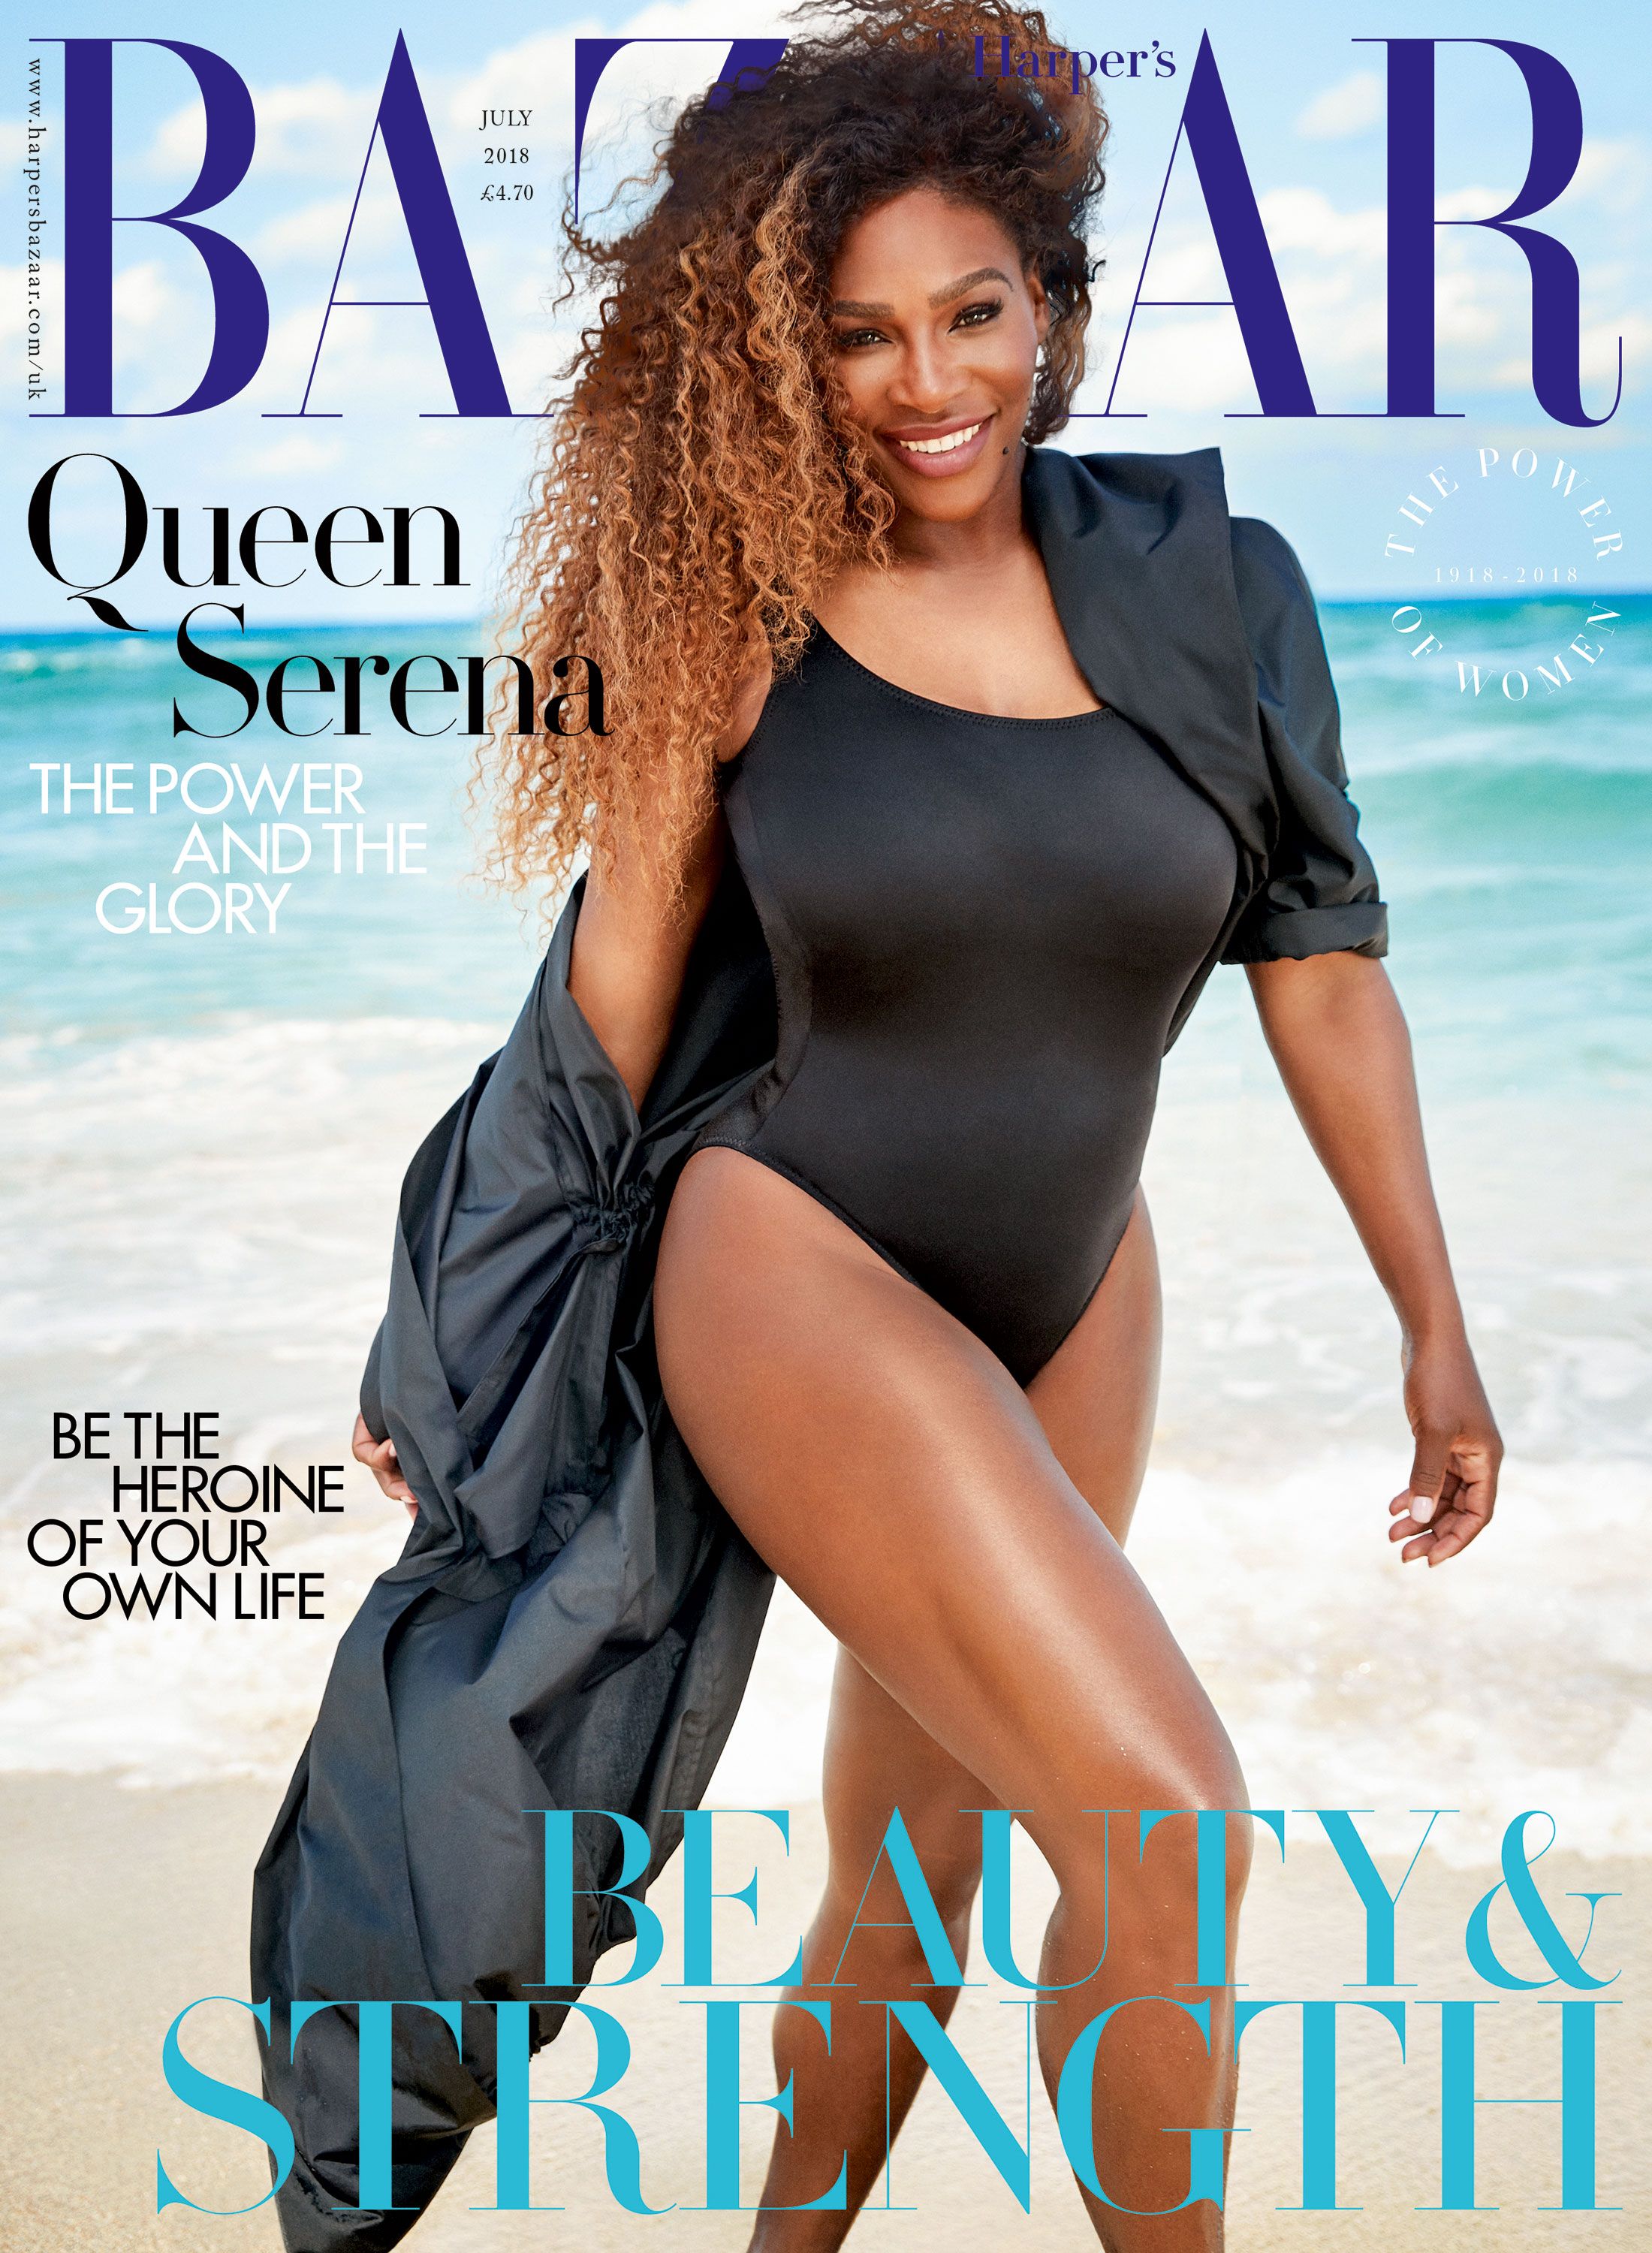 Serena Williams interview - Harper's Bazaar July 2018 issue